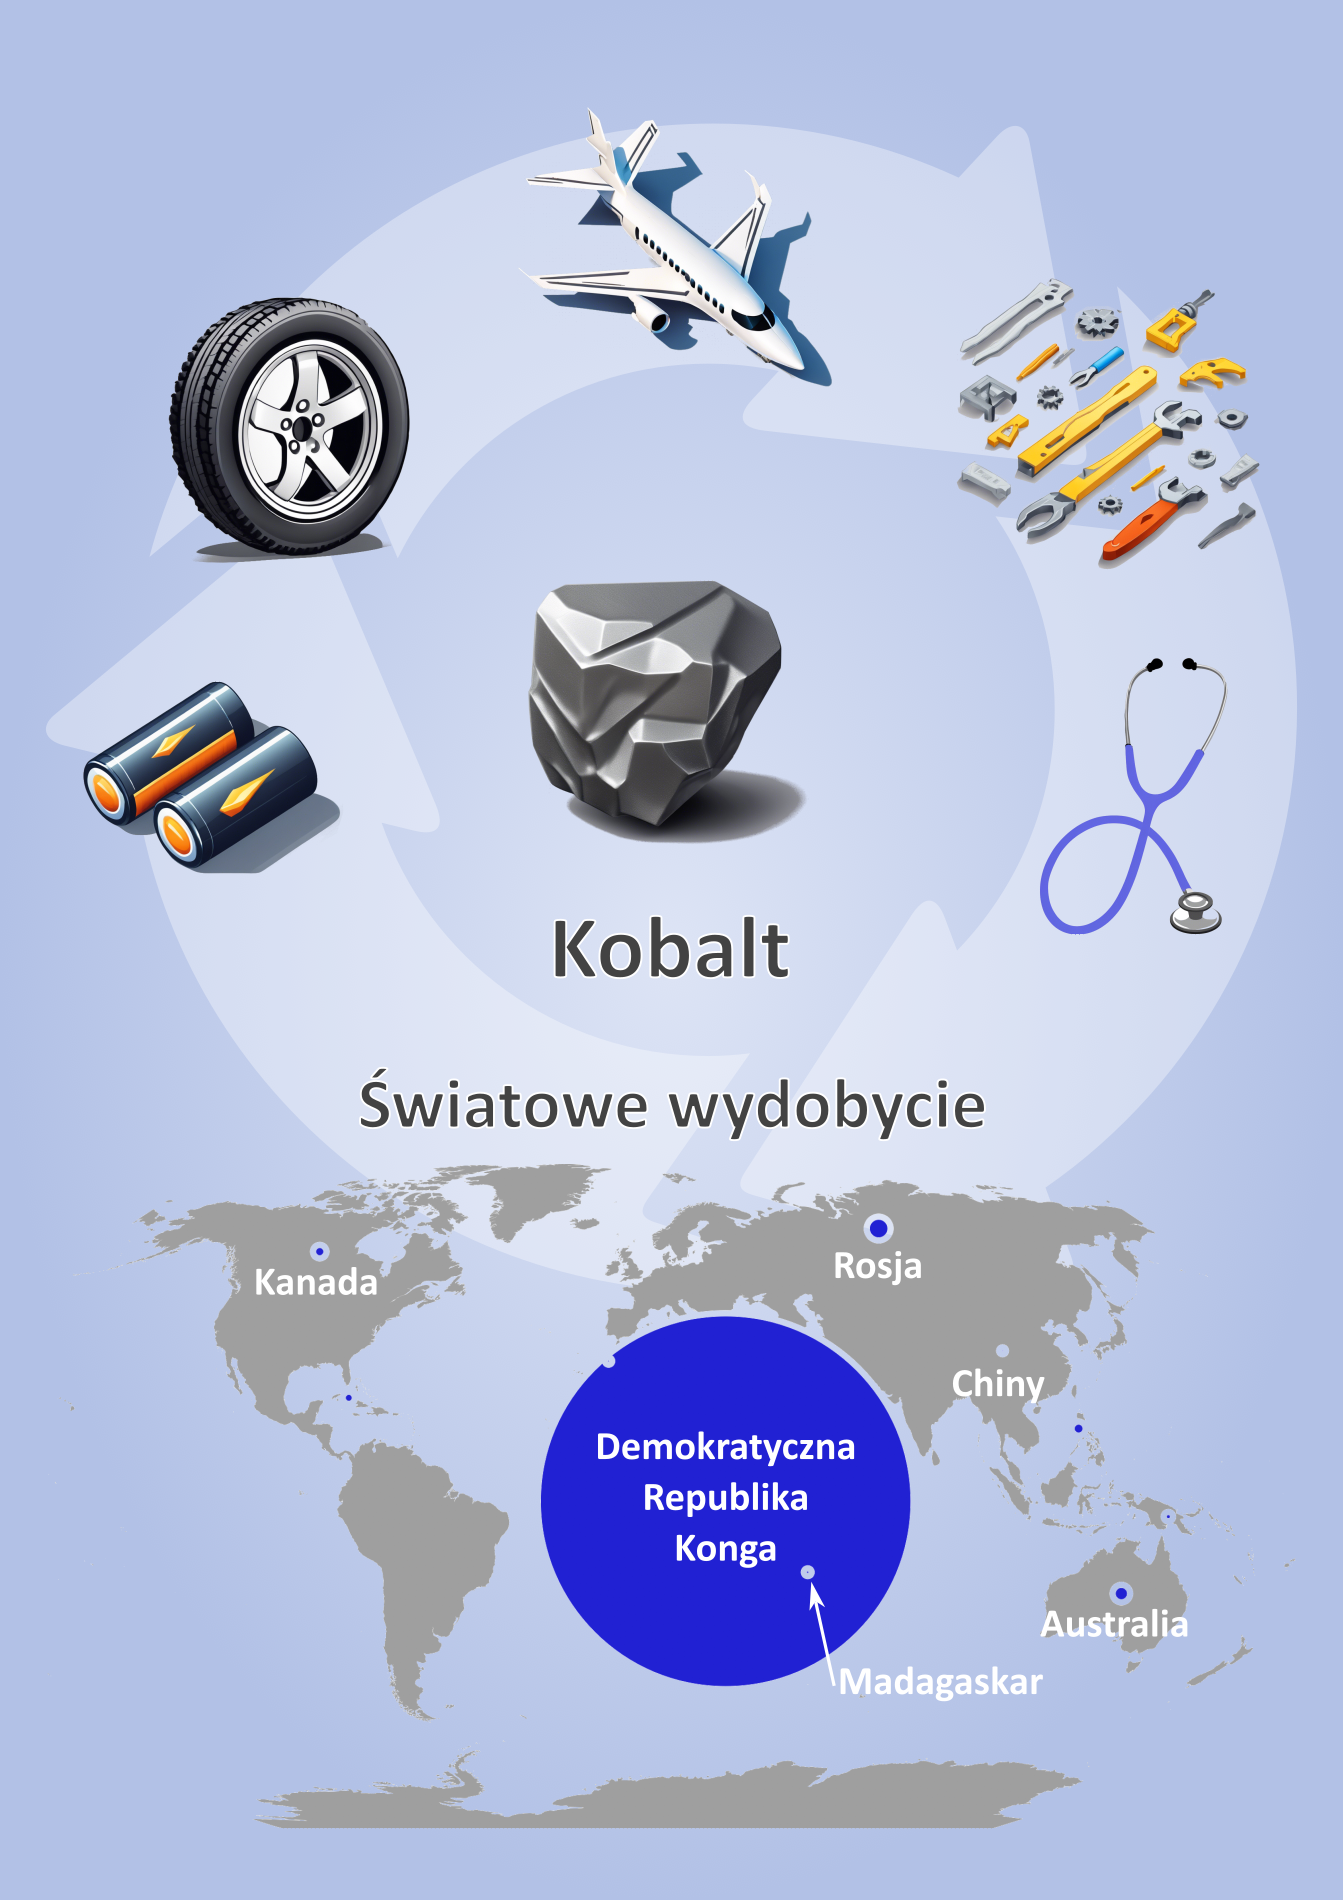 Kobalt - wydobycie i najważniejsze zastosowania; infografika.